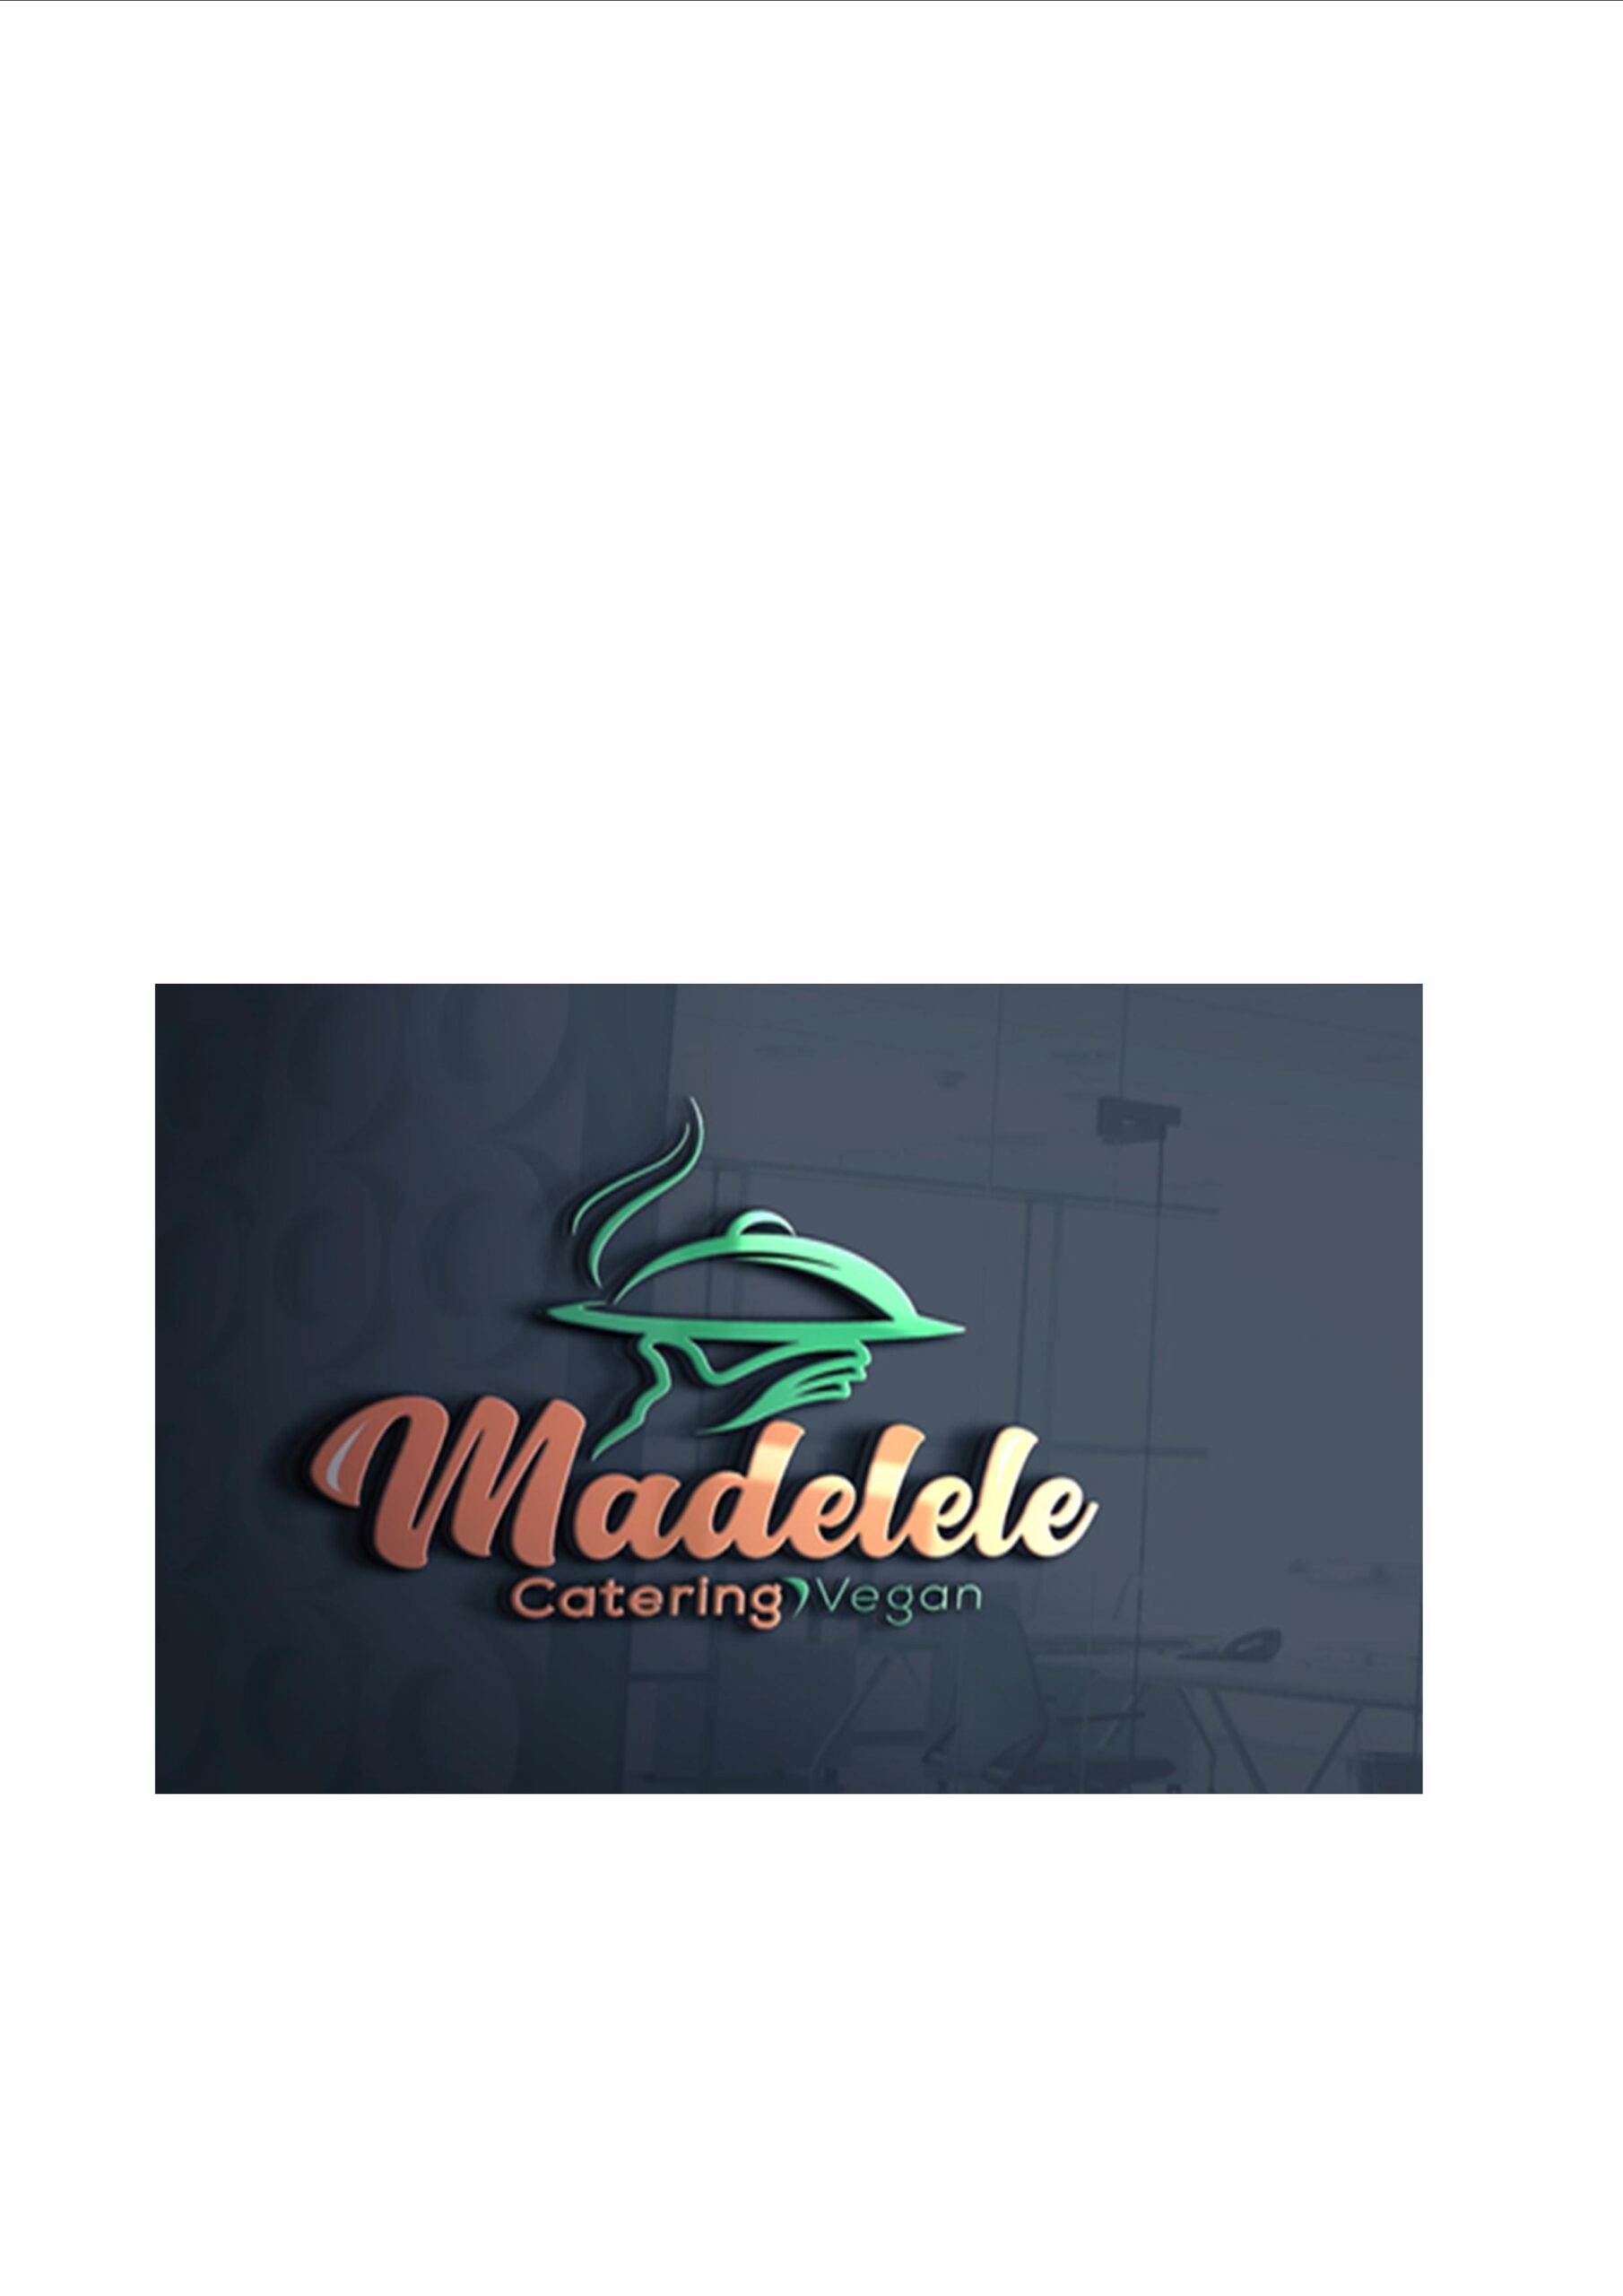 Madelele Veg Catering